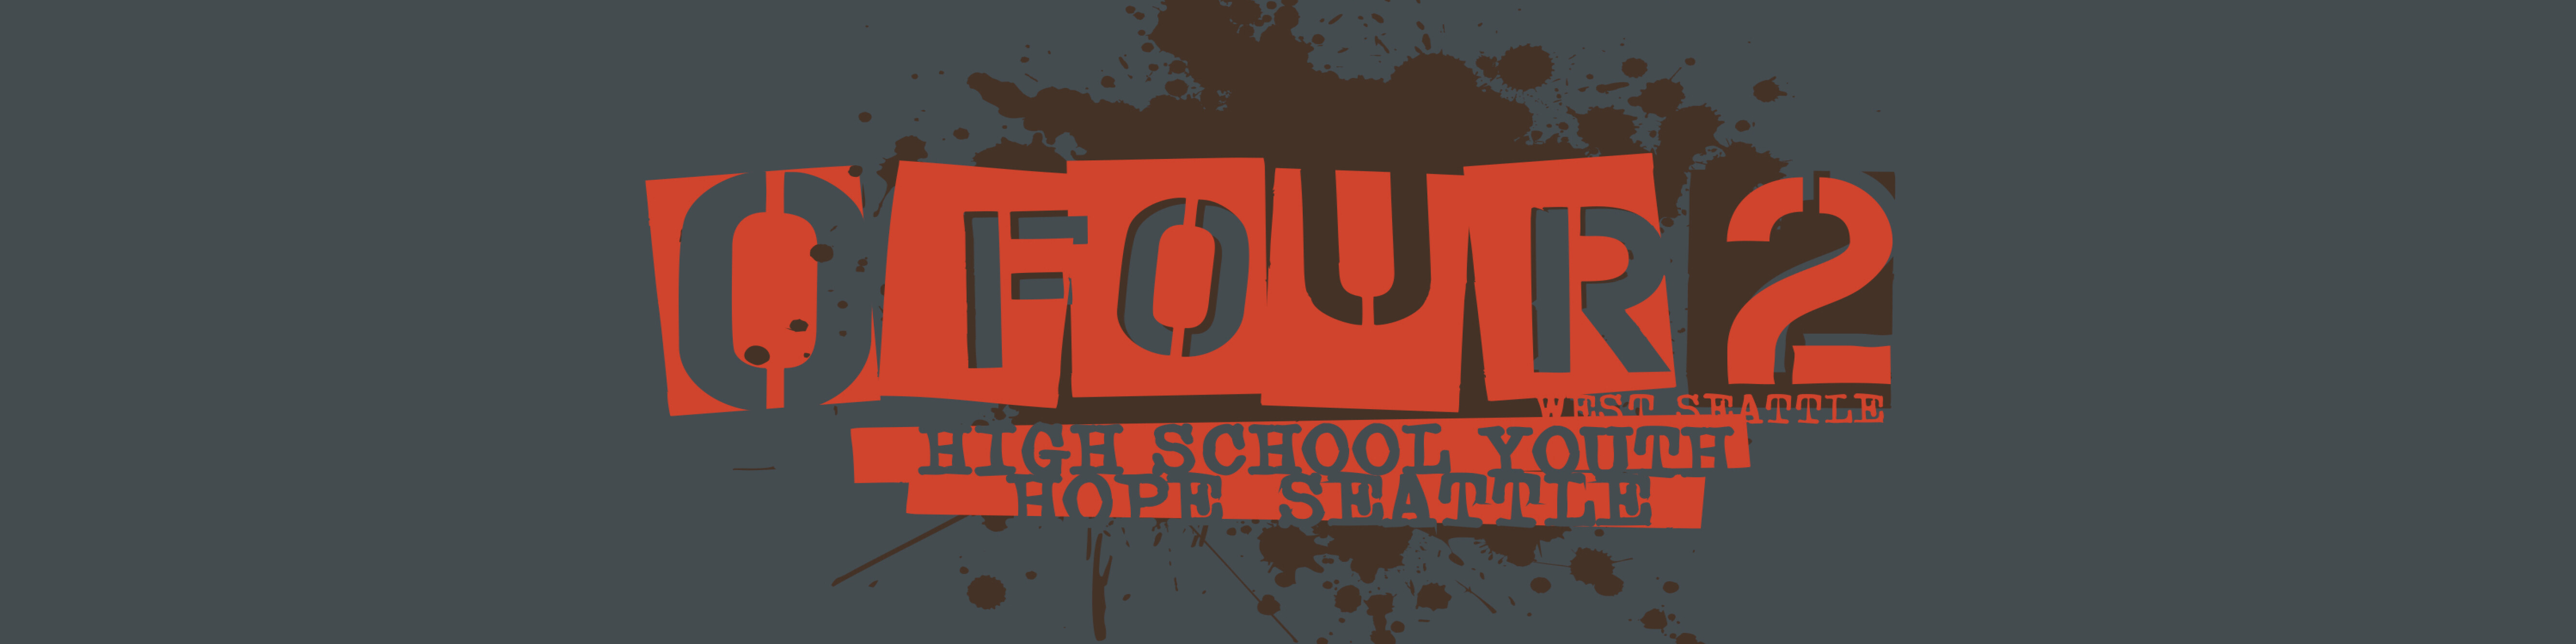 ofour2 logo 1